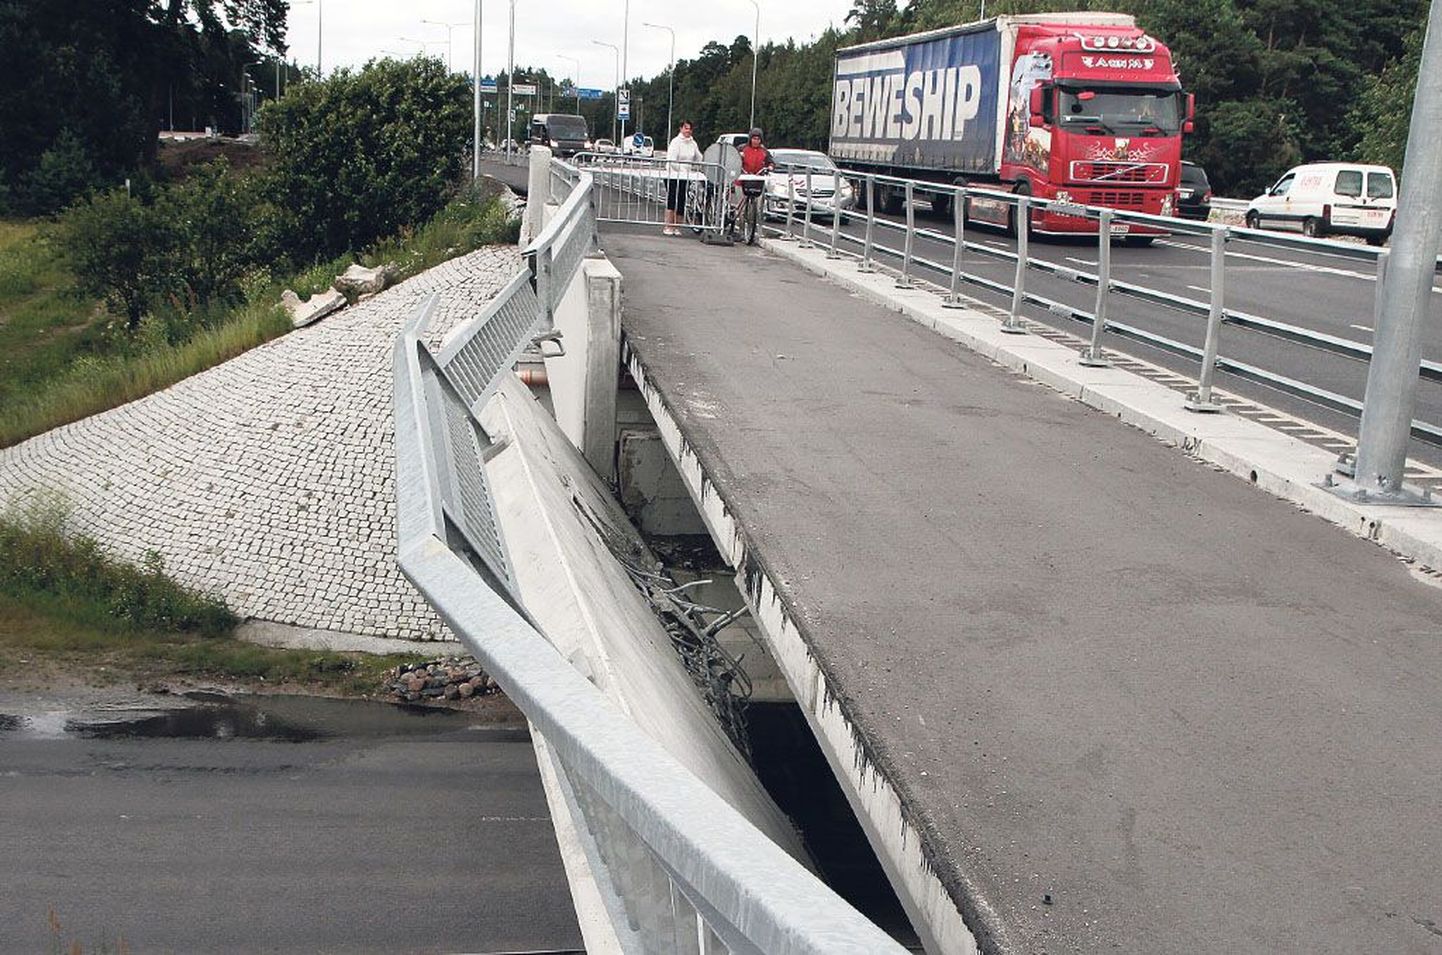 Pärast avariid oli jalakäijate liikumine sillal peatatud ja silla all suletud üks sõiduradadest. Eile pärastlõunaks oli taastatud jalakäijate liiklus sillal ja tehti ettevalmistusi liikluse täies mahus avamiseks silla all.